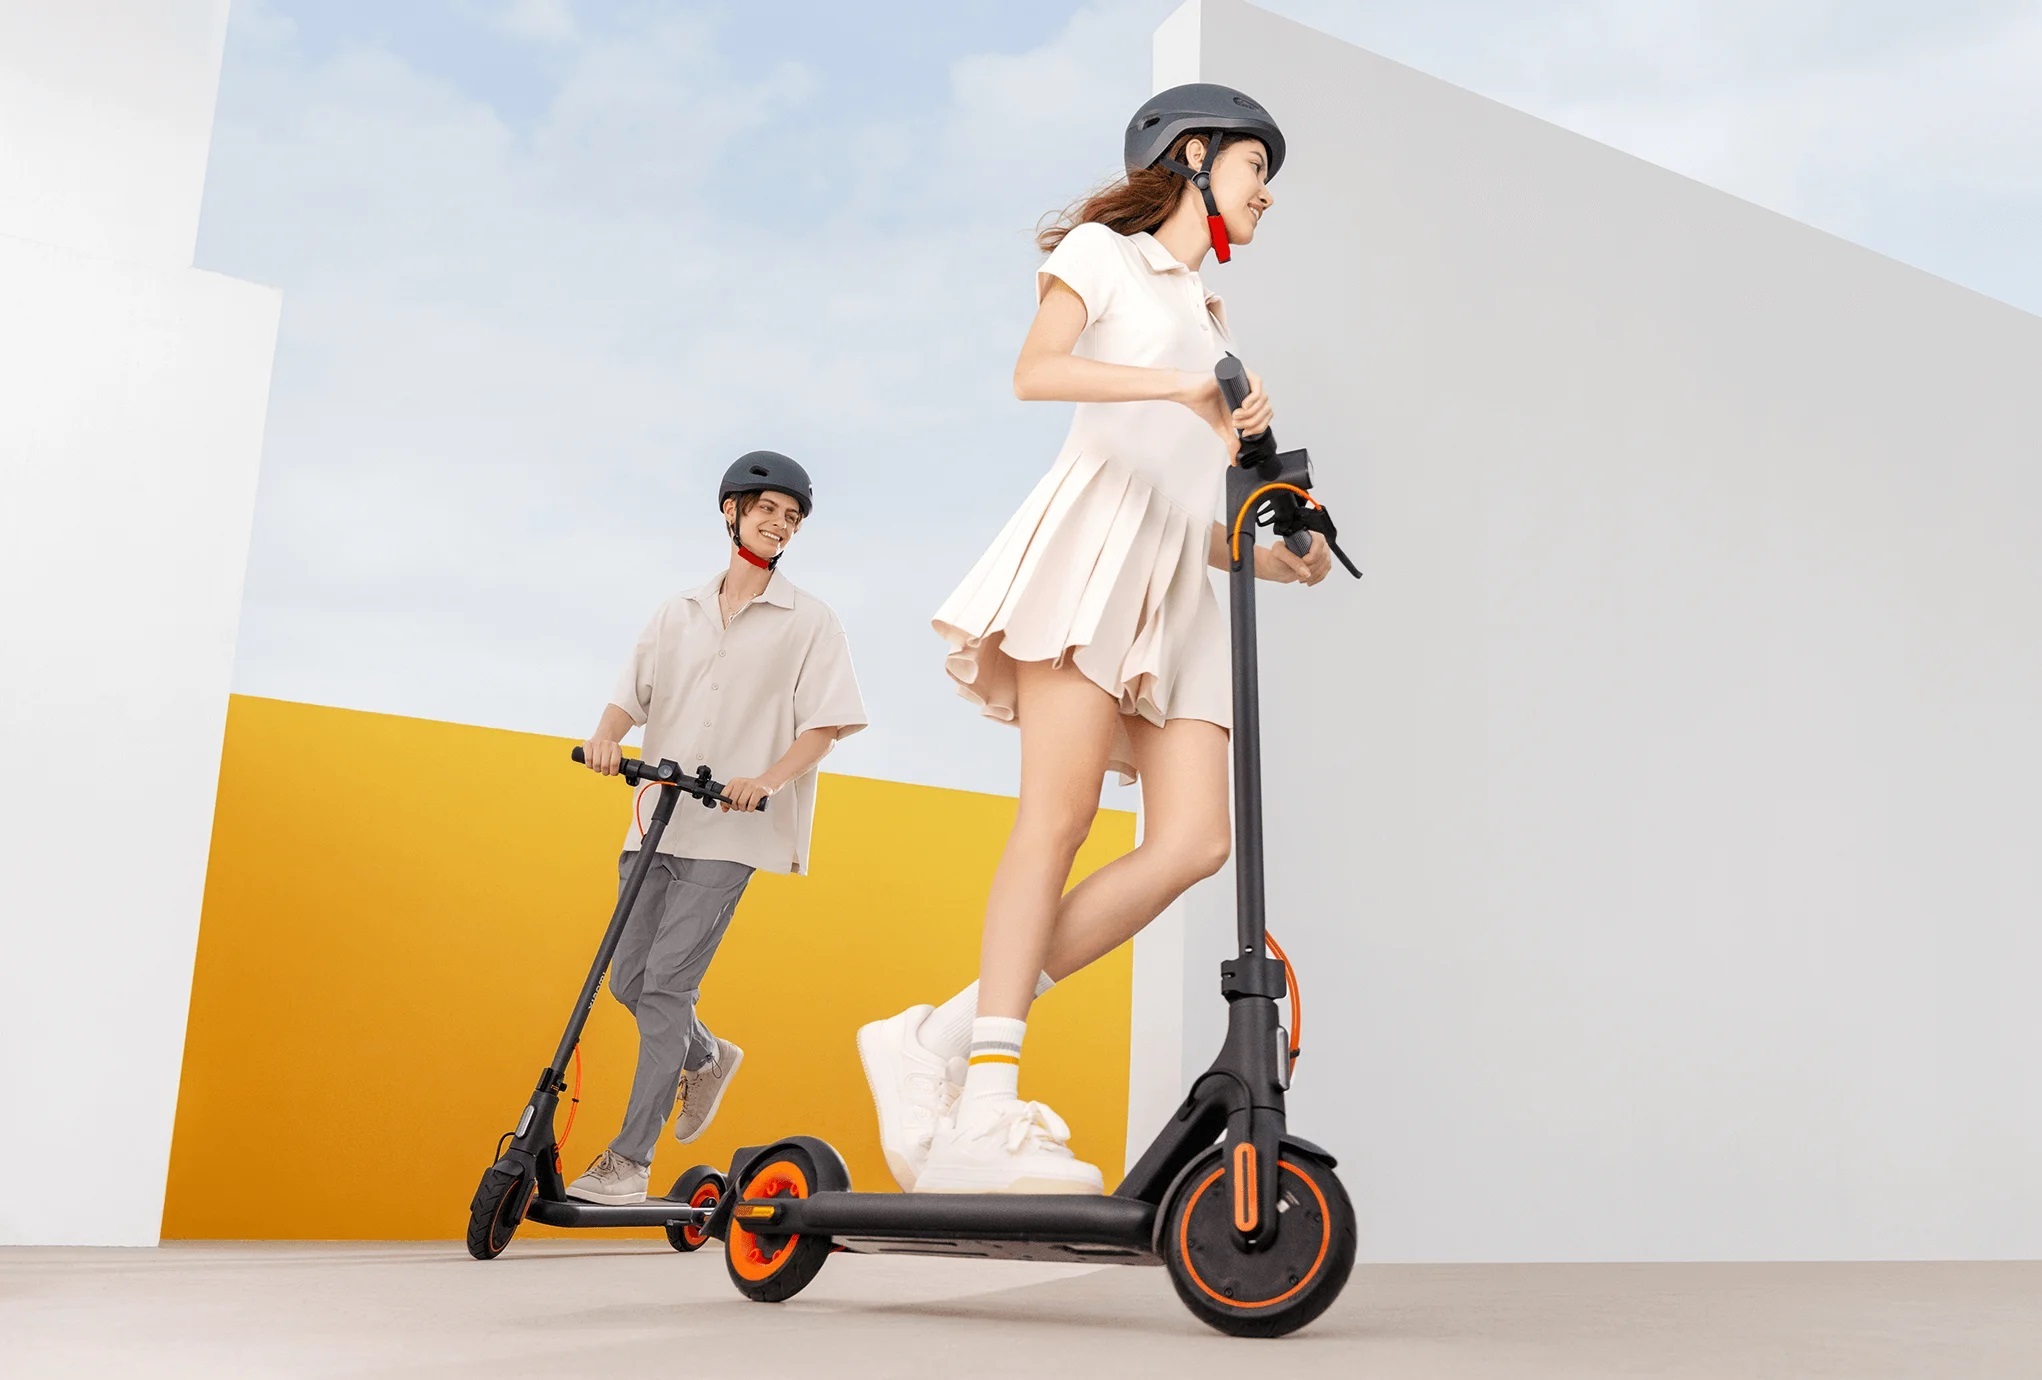 Xiaomi Electric Scooter 4 Go: een budget elektrische scooter met een 450W motor en een bereik van 18km